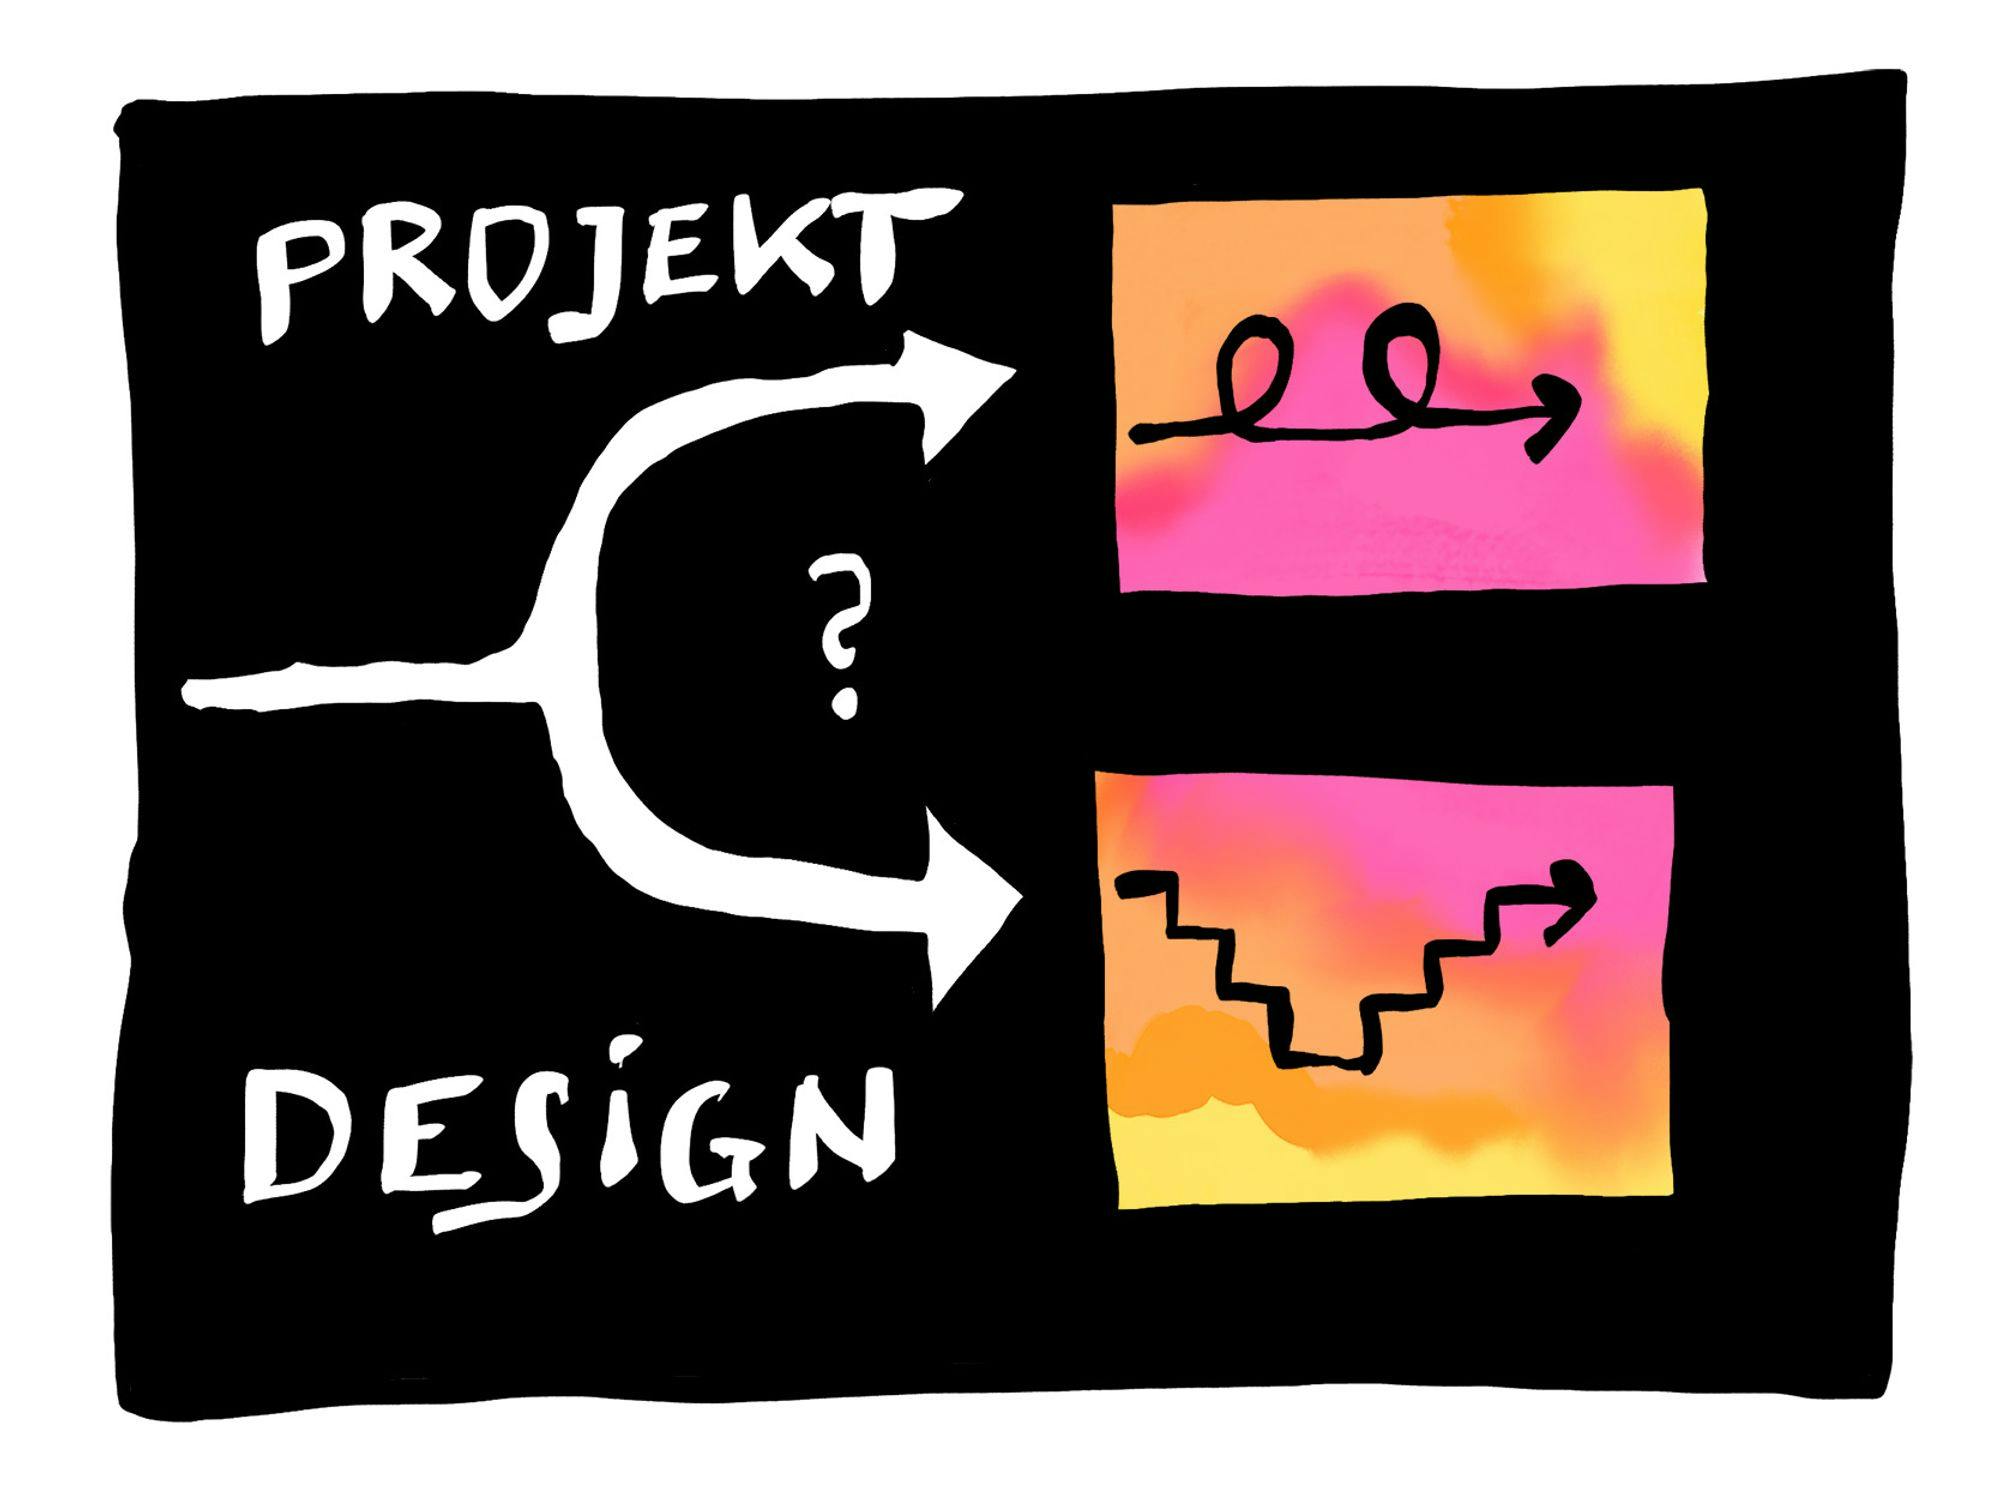 Projekt Design: Klassisch oder agil?